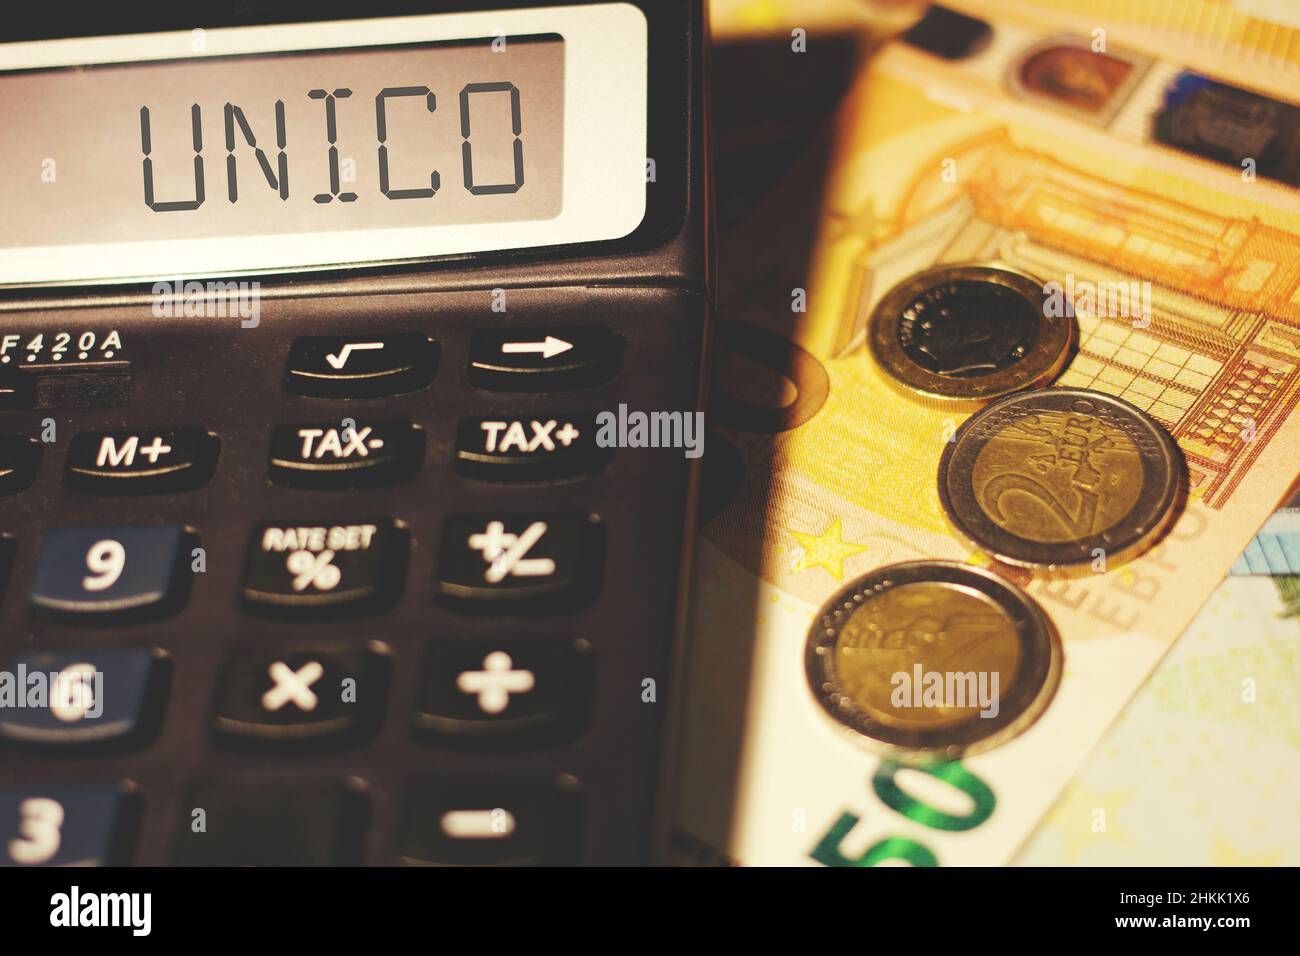 Calculatrice avec le signe 'Unico', concept de calcul de l'impôt italien Banque D'Images